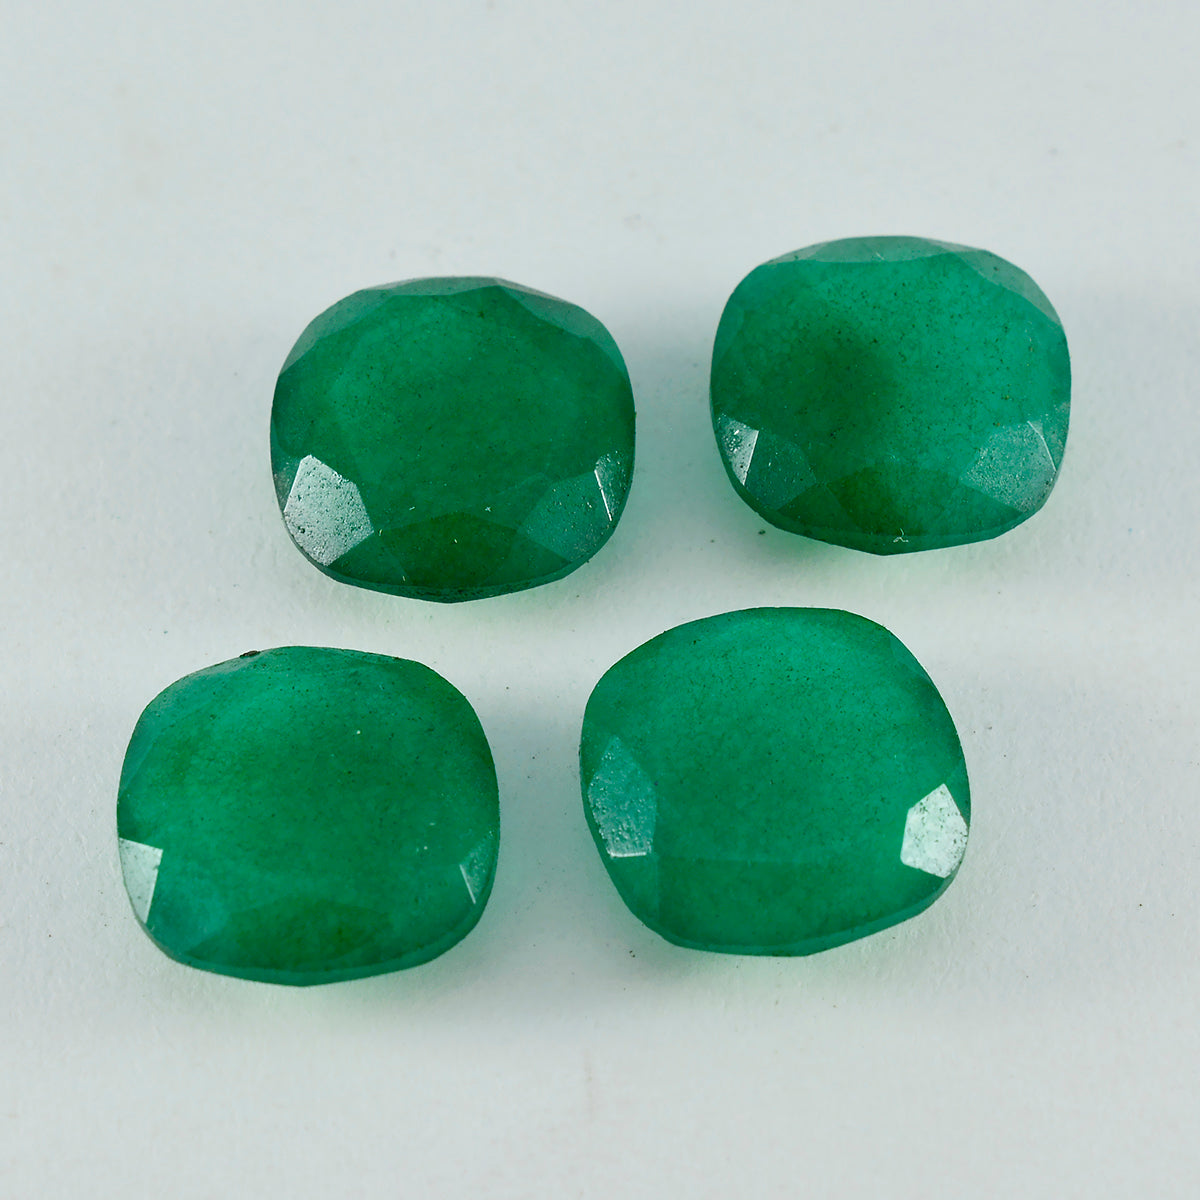 Riyogems 1 pieza jaspe verde auténtico facetado 13x13mm forma de cojín piedra suelta de excelente calidad